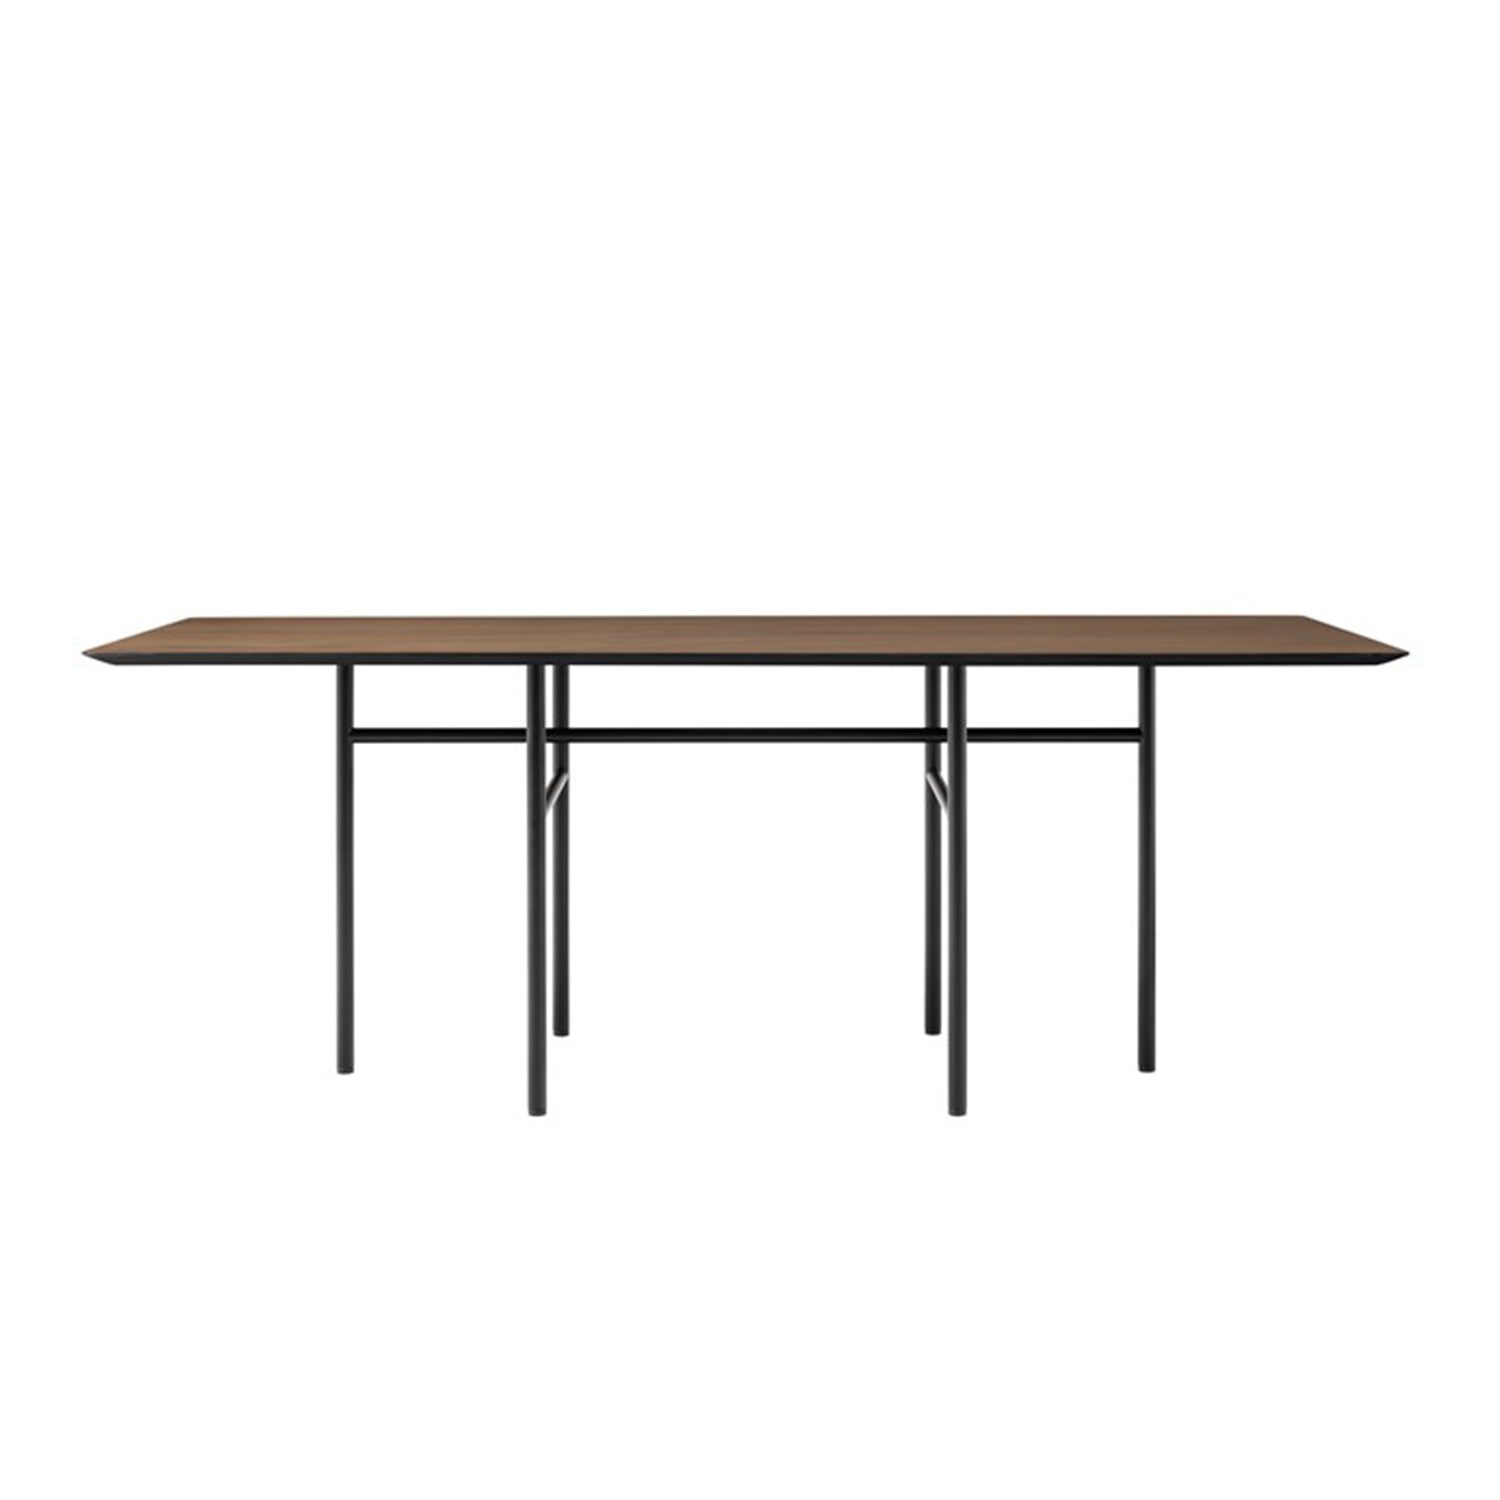 Snaregade Table - The Design Choice